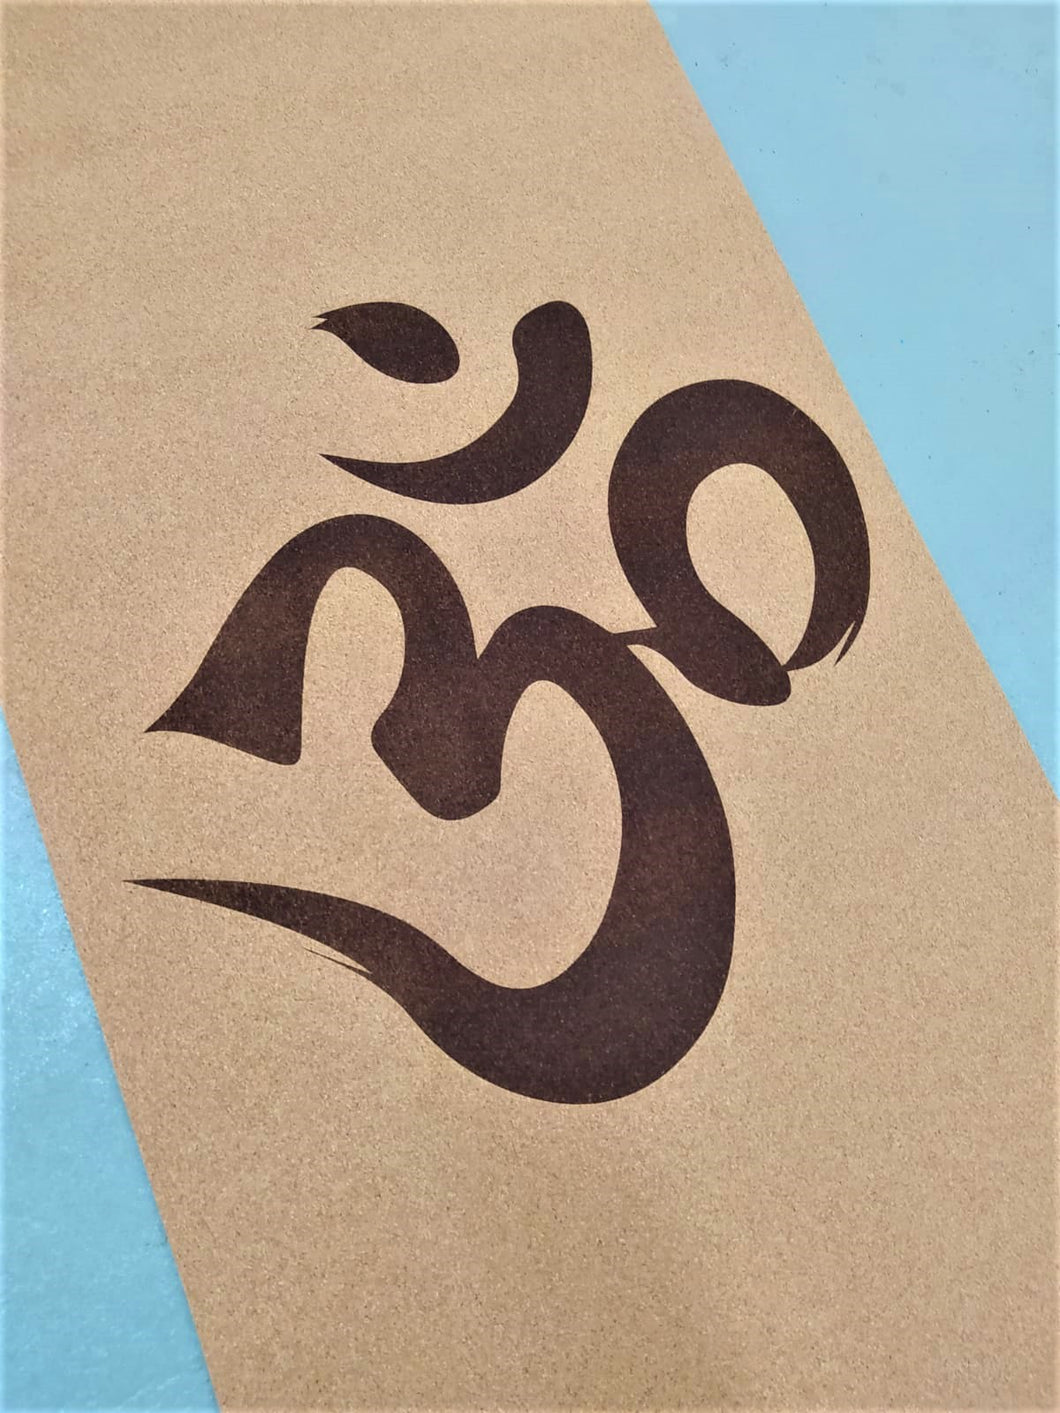 Tapete Yoga em cortiça com grande símbolo OM impresso no centro